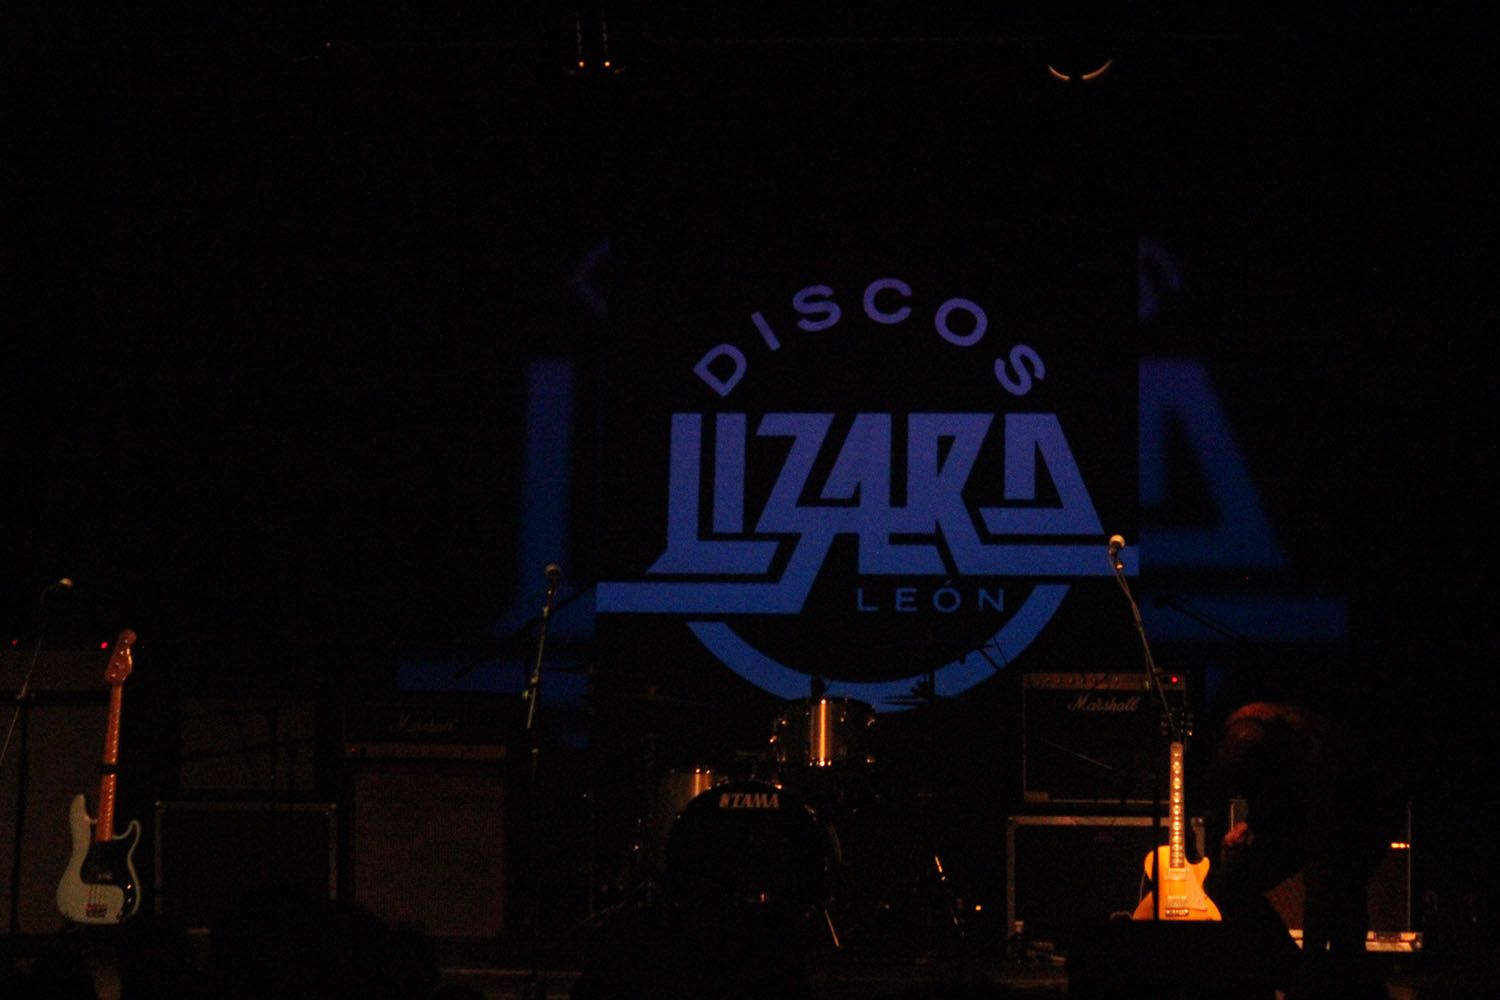 Discos Lizard17